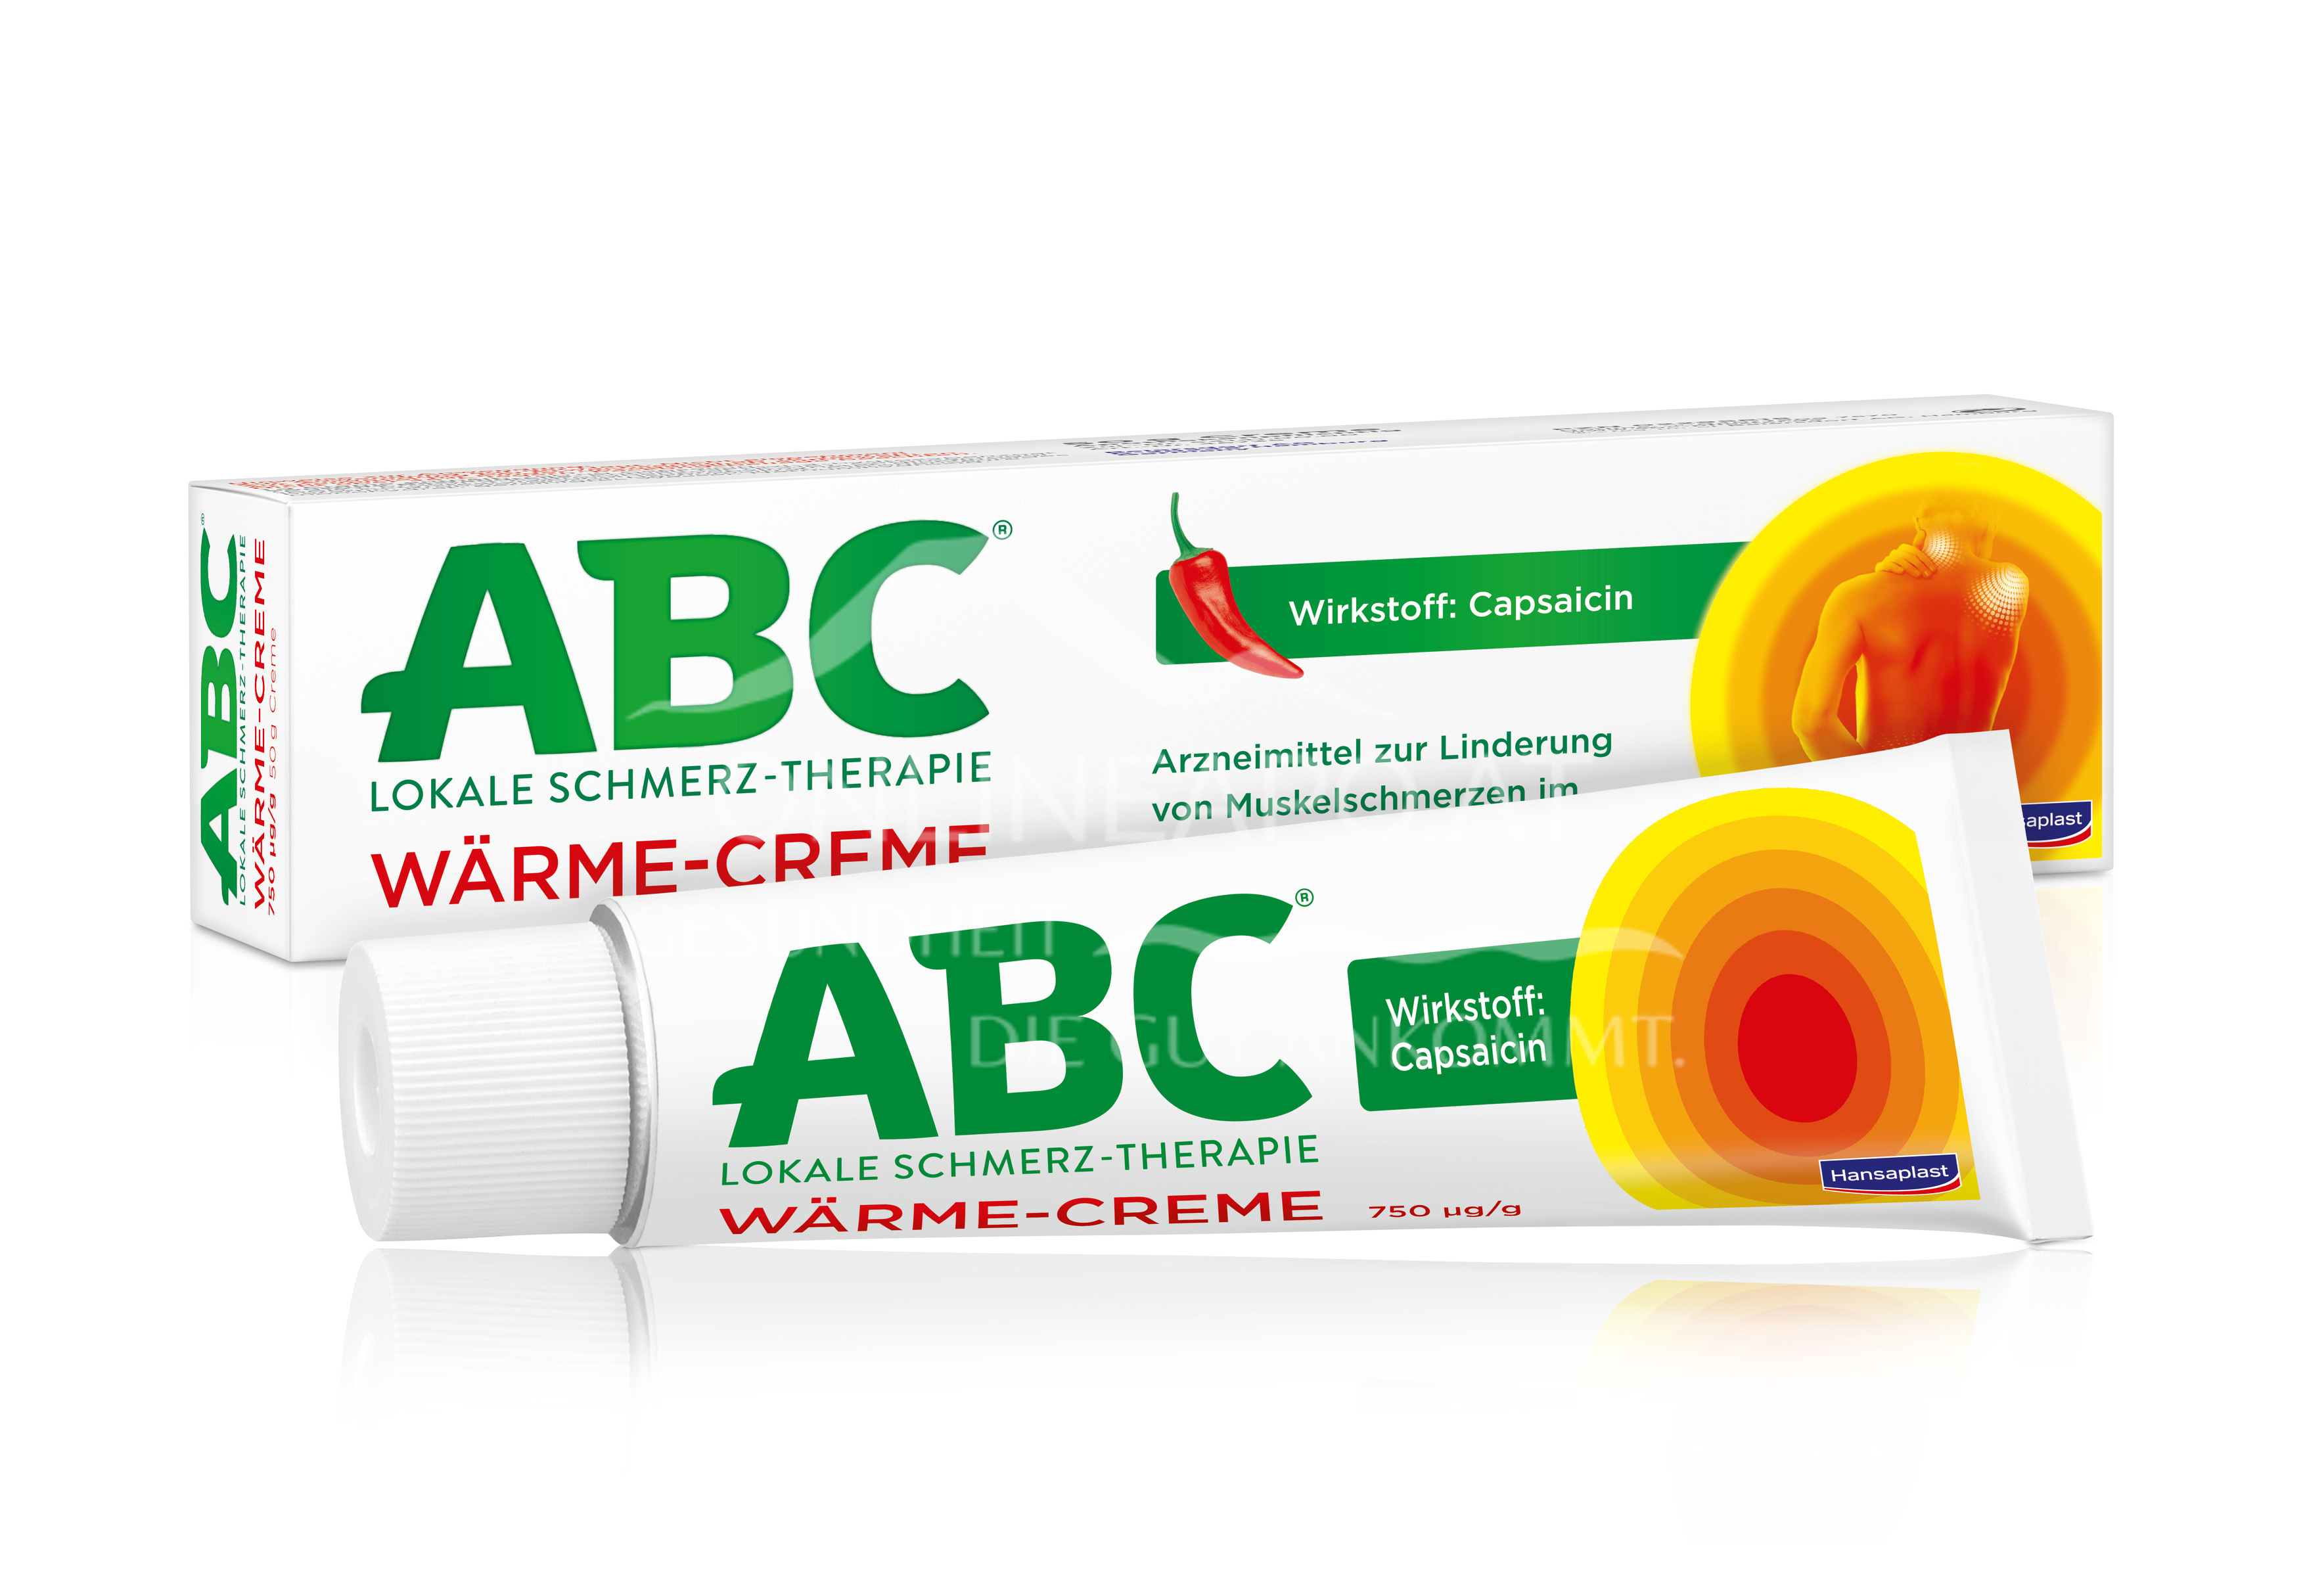 ABC Wärme-Creme